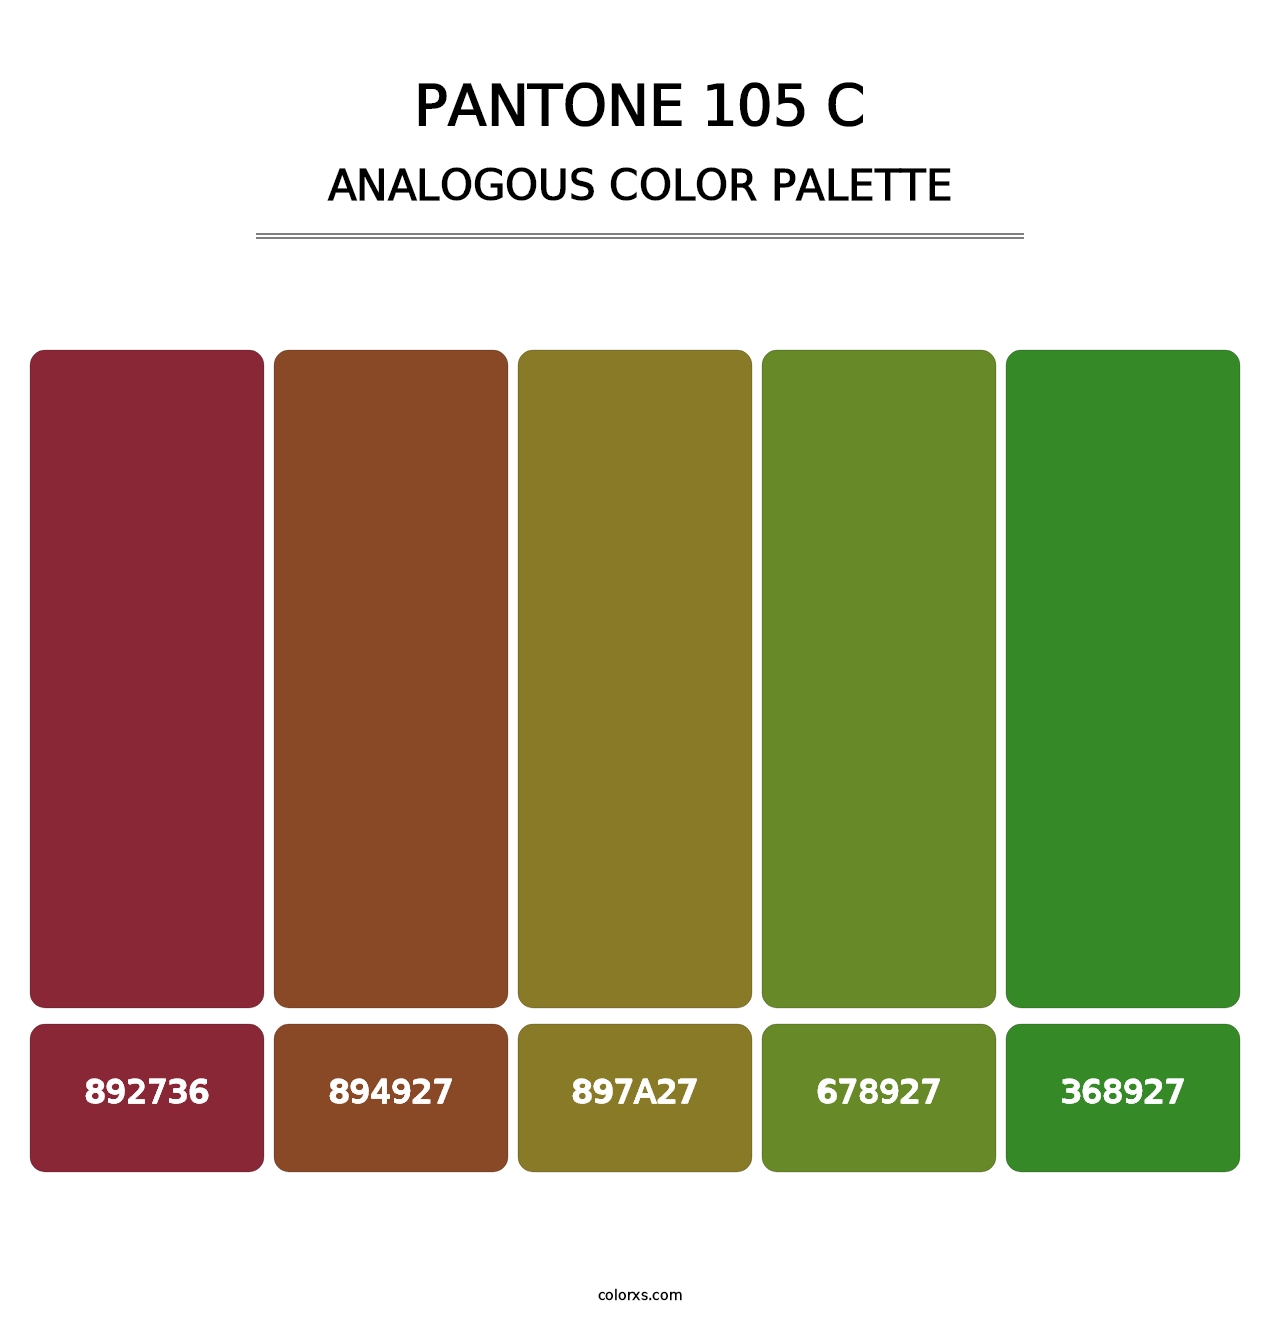 PANTONE 105 C - Analogous Color Palette